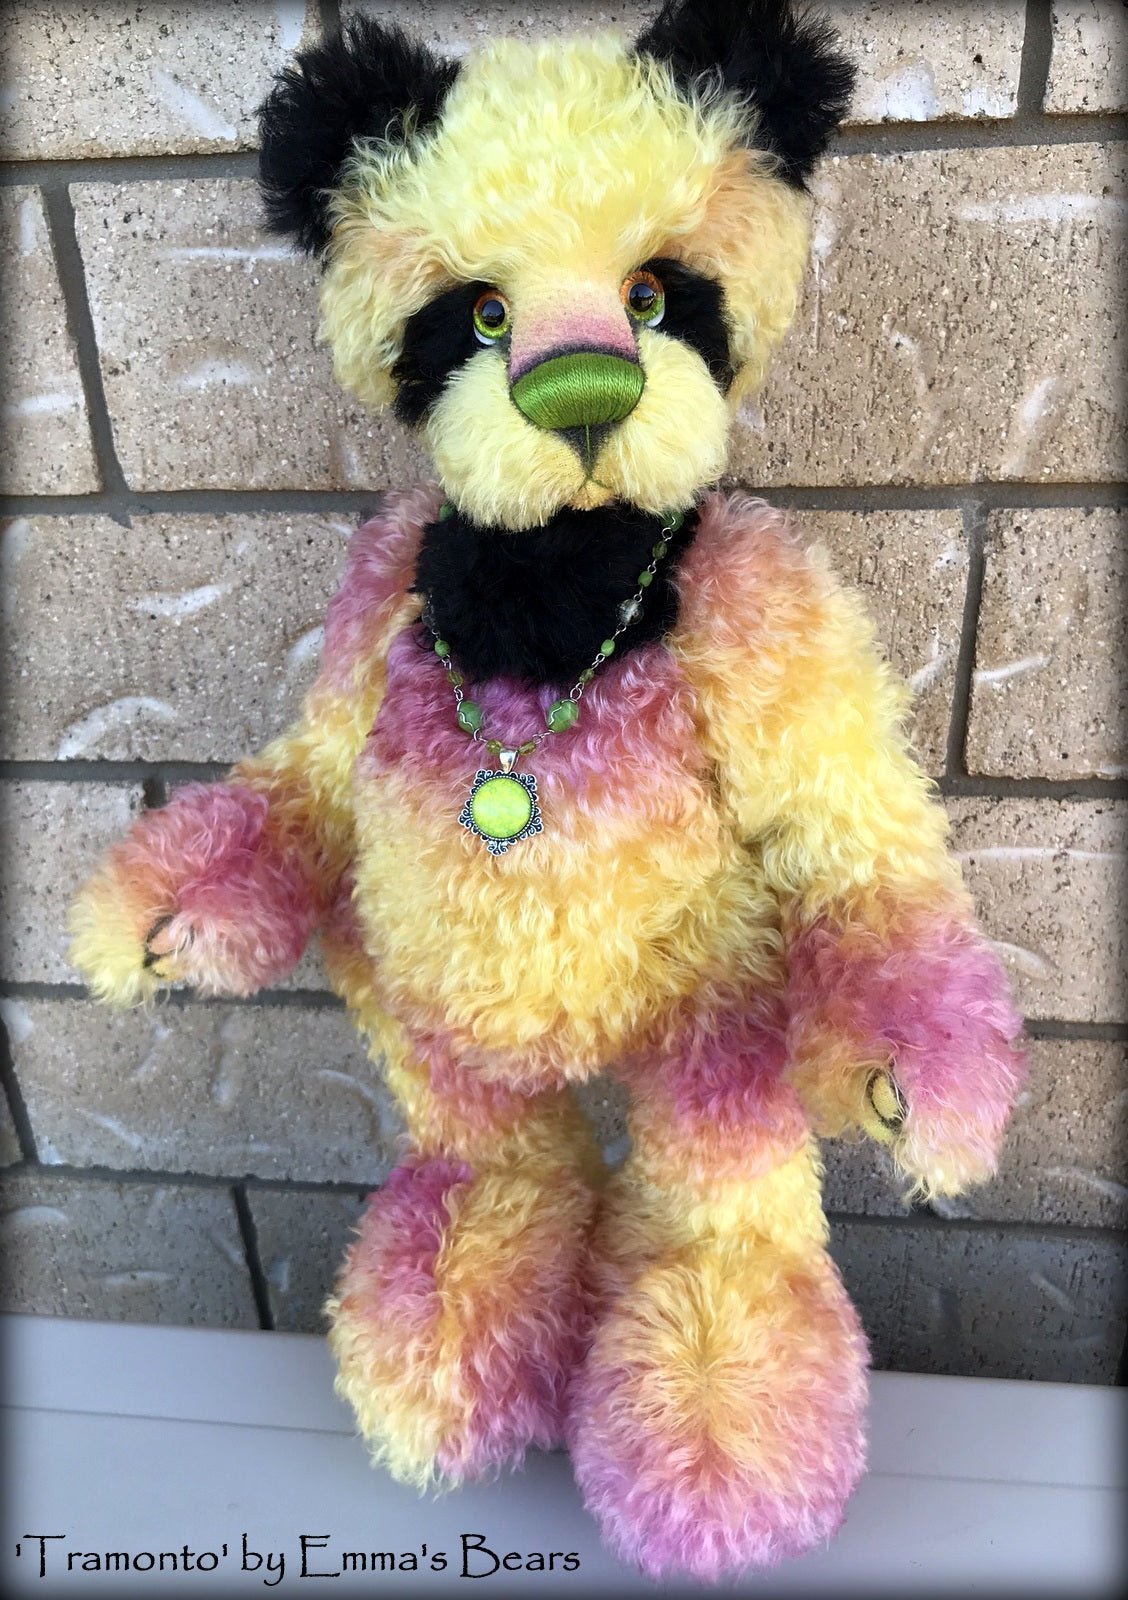 Tramonto - 19in hand dyed mohair Artist Bear by Emmas Bears - OOAK